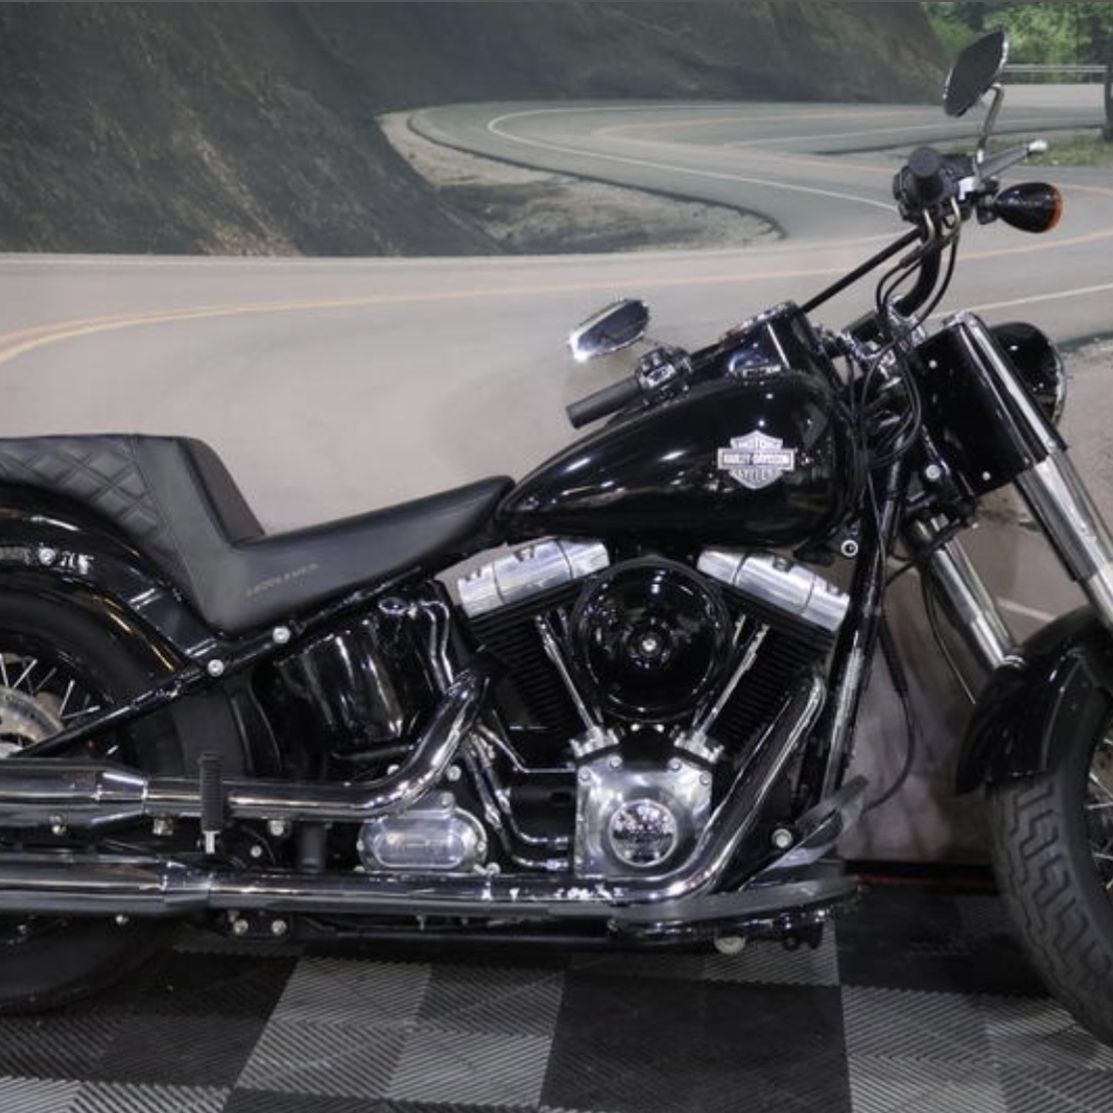 2015 Harley Davidson FLS - Softail Slim